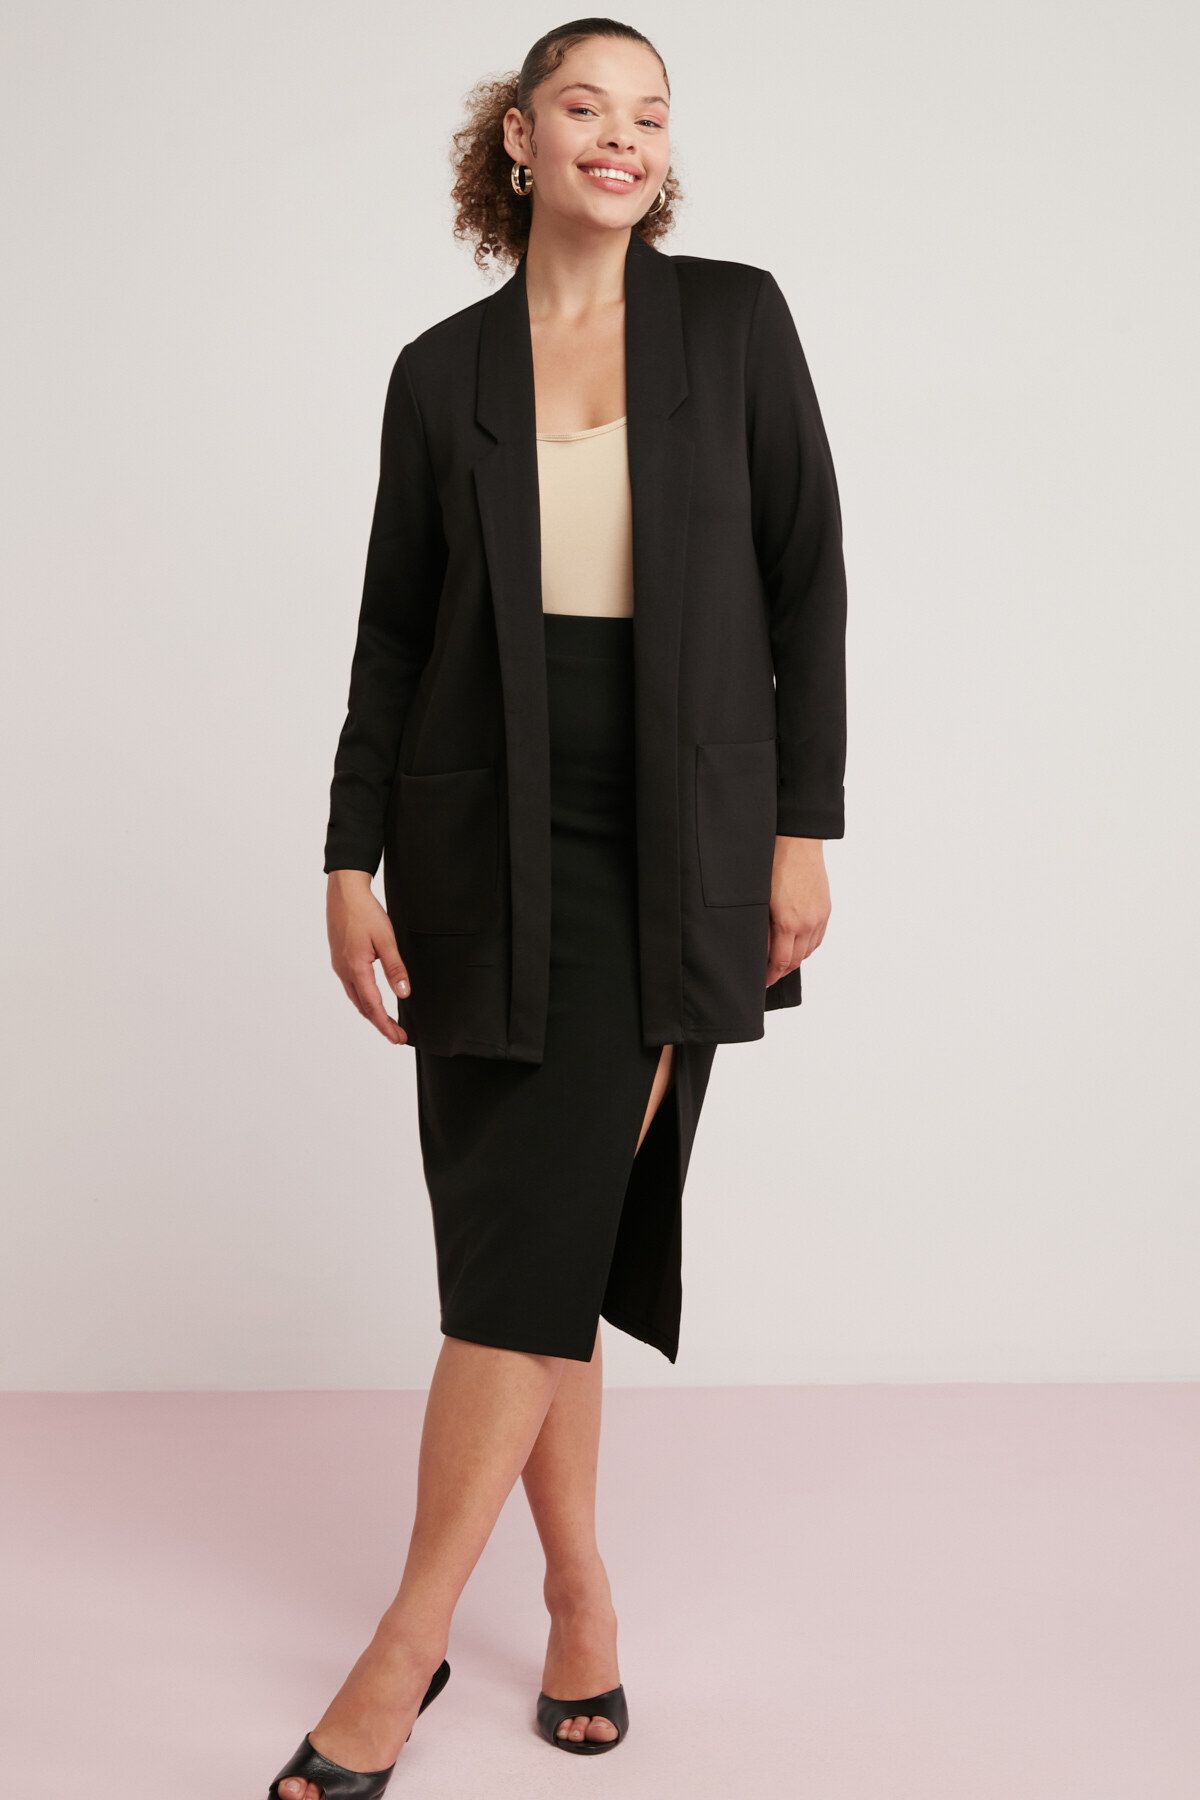 ETHIQUET Nora Kadın Örme Çelikli Interlok Kumaşlı Takma Cepli Şal Yakalı Uzun Siyah Ceket